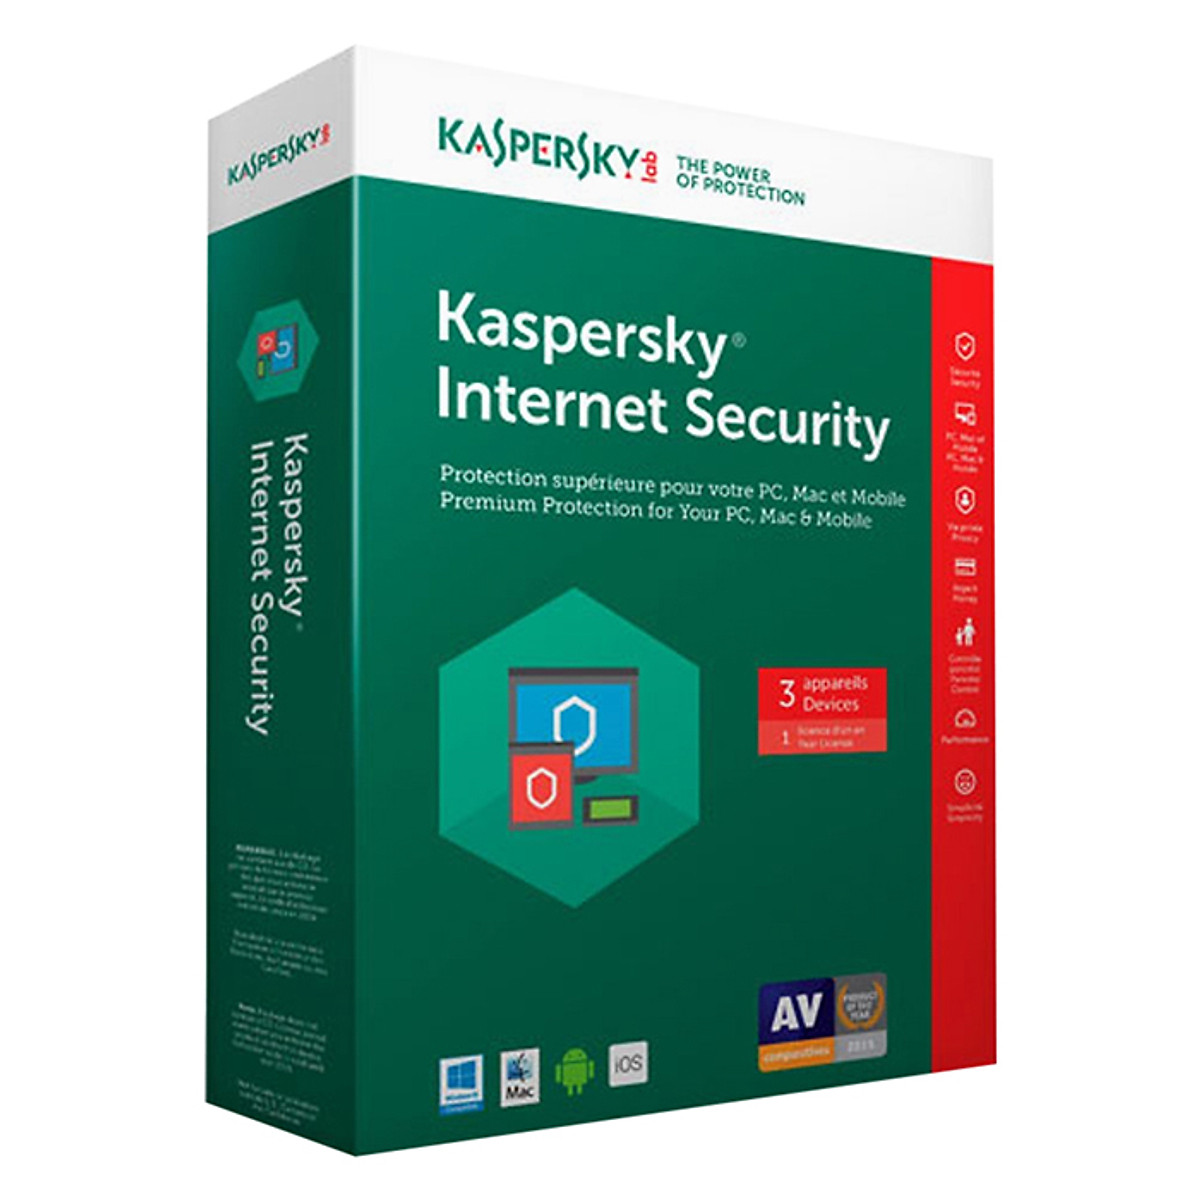 Phần Mềm Diệt Virus Kaspersky Internet Security (KIS) (3 User) - Hàng chính hãng